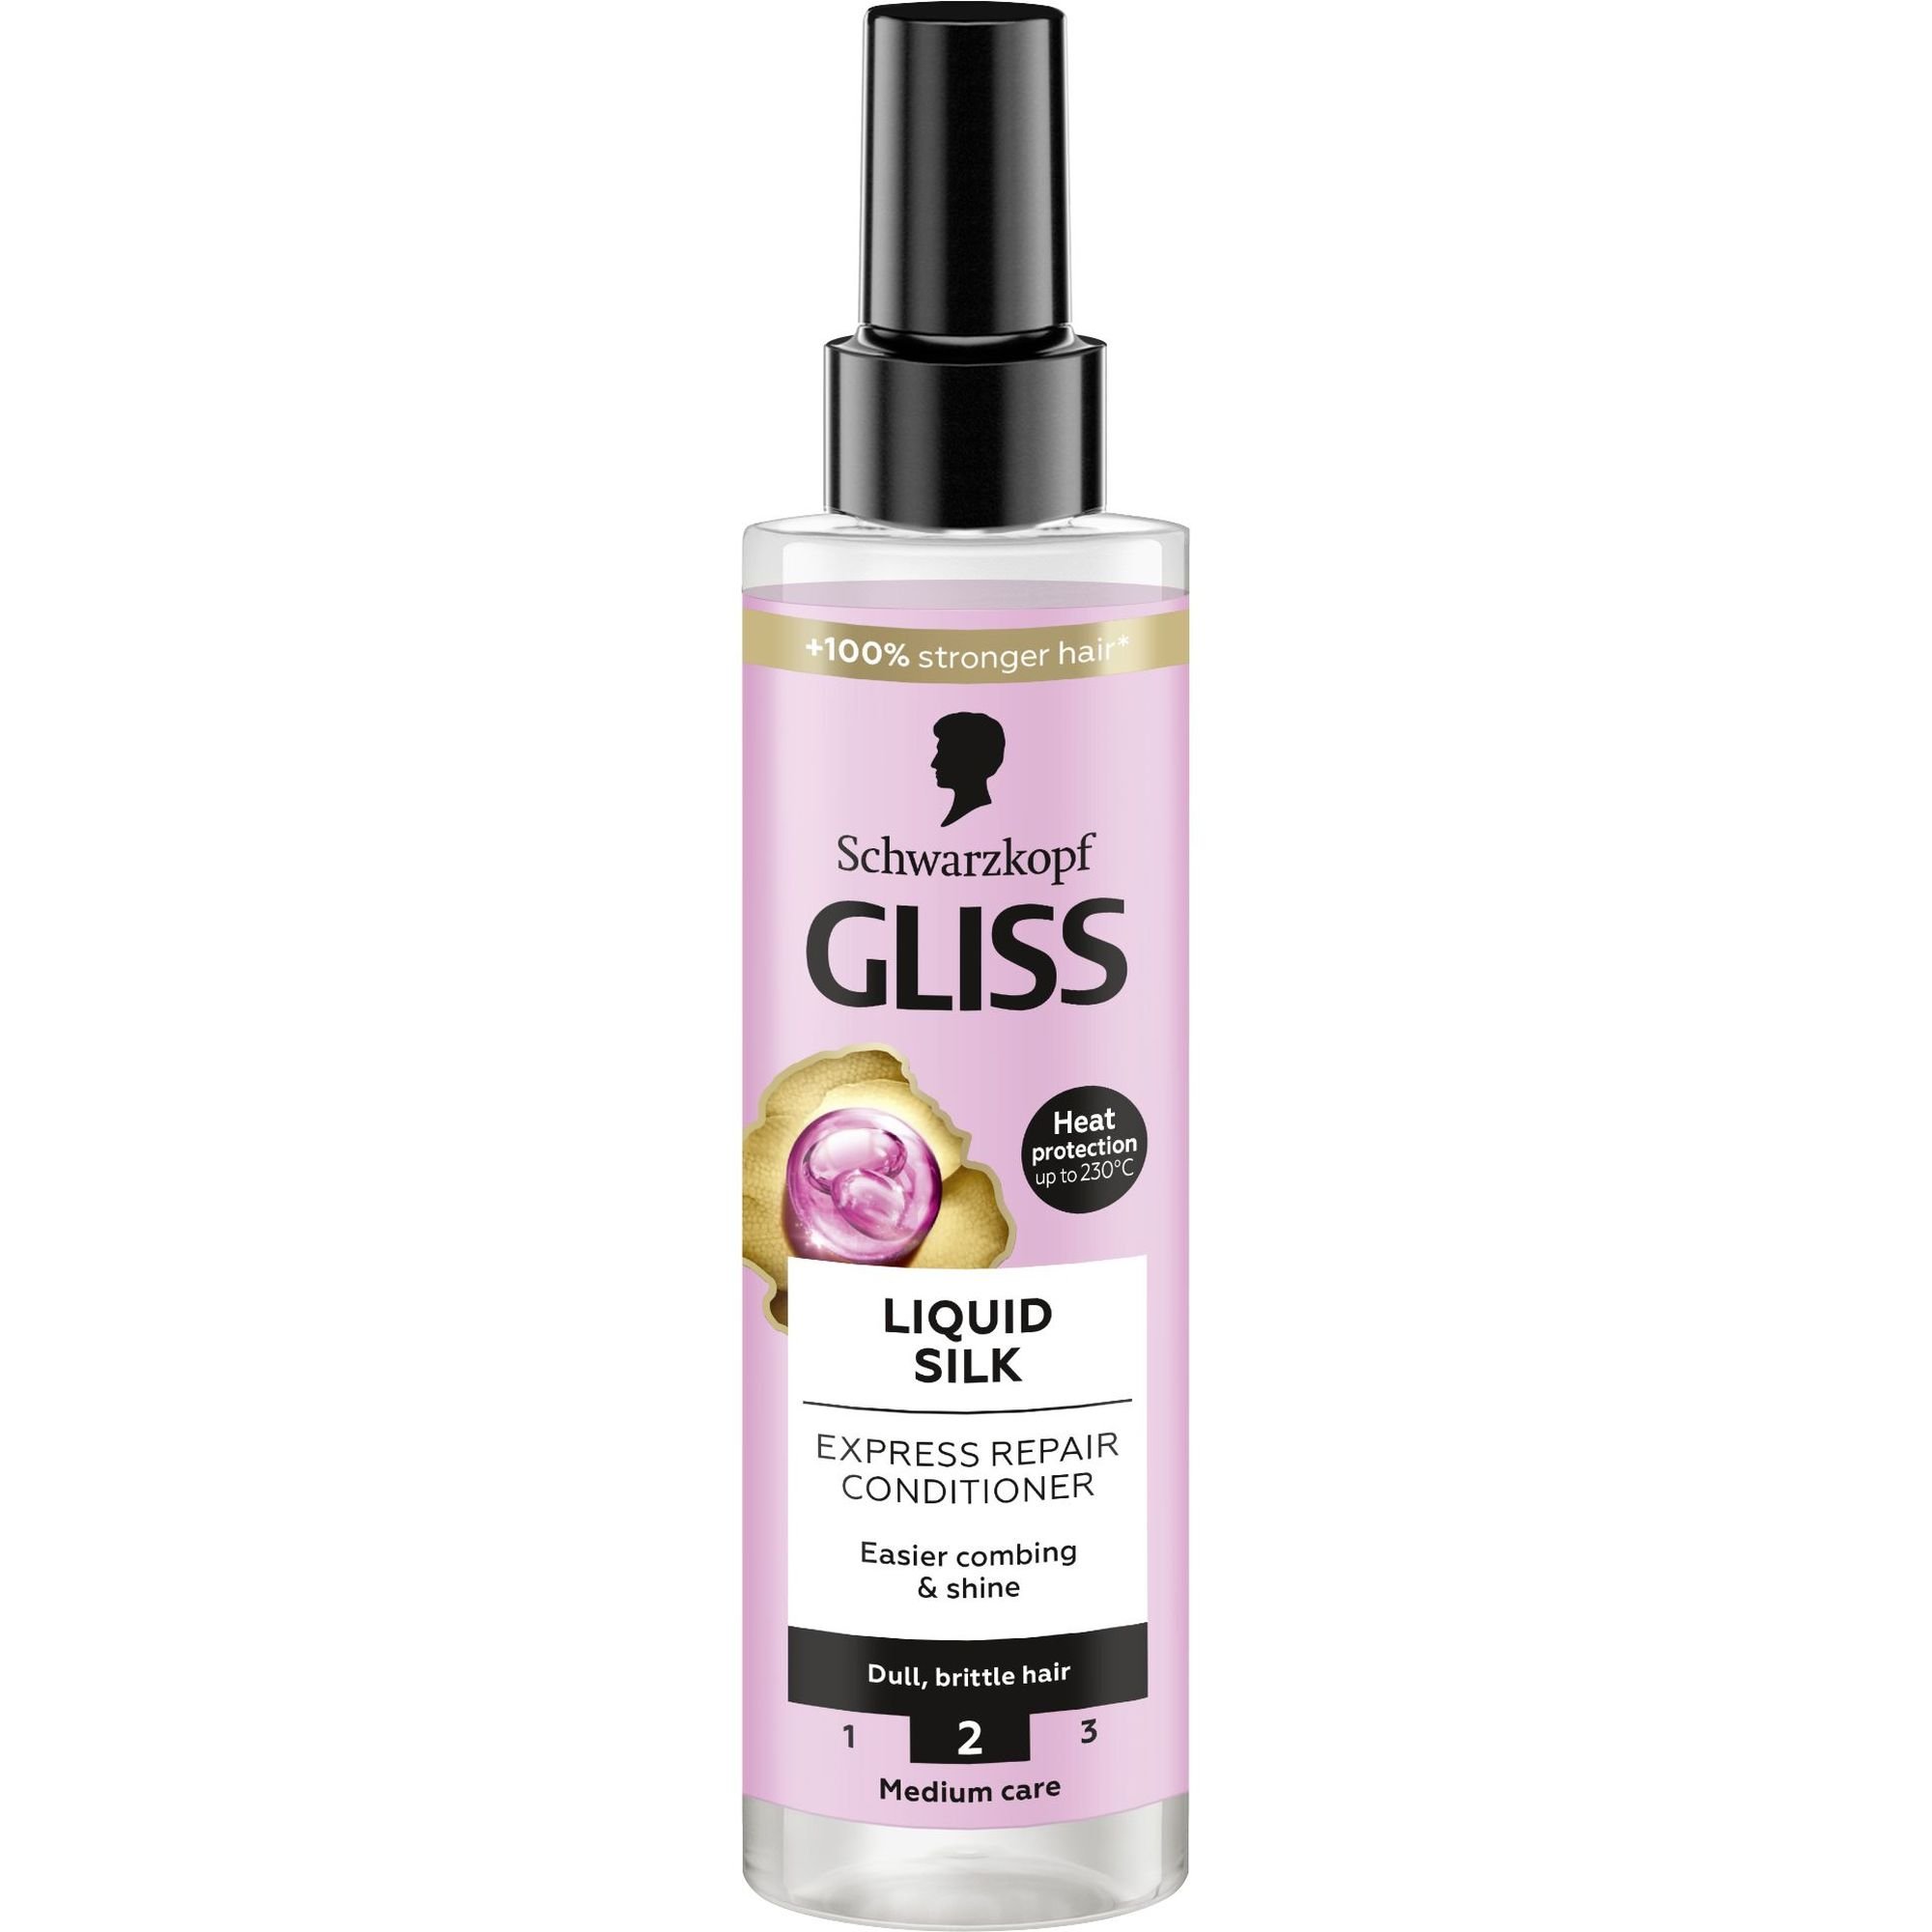 Експрес-кондиціонер Gliss Liquid Silk для ламкого та тьмяного волосся 200 мл - фото 1